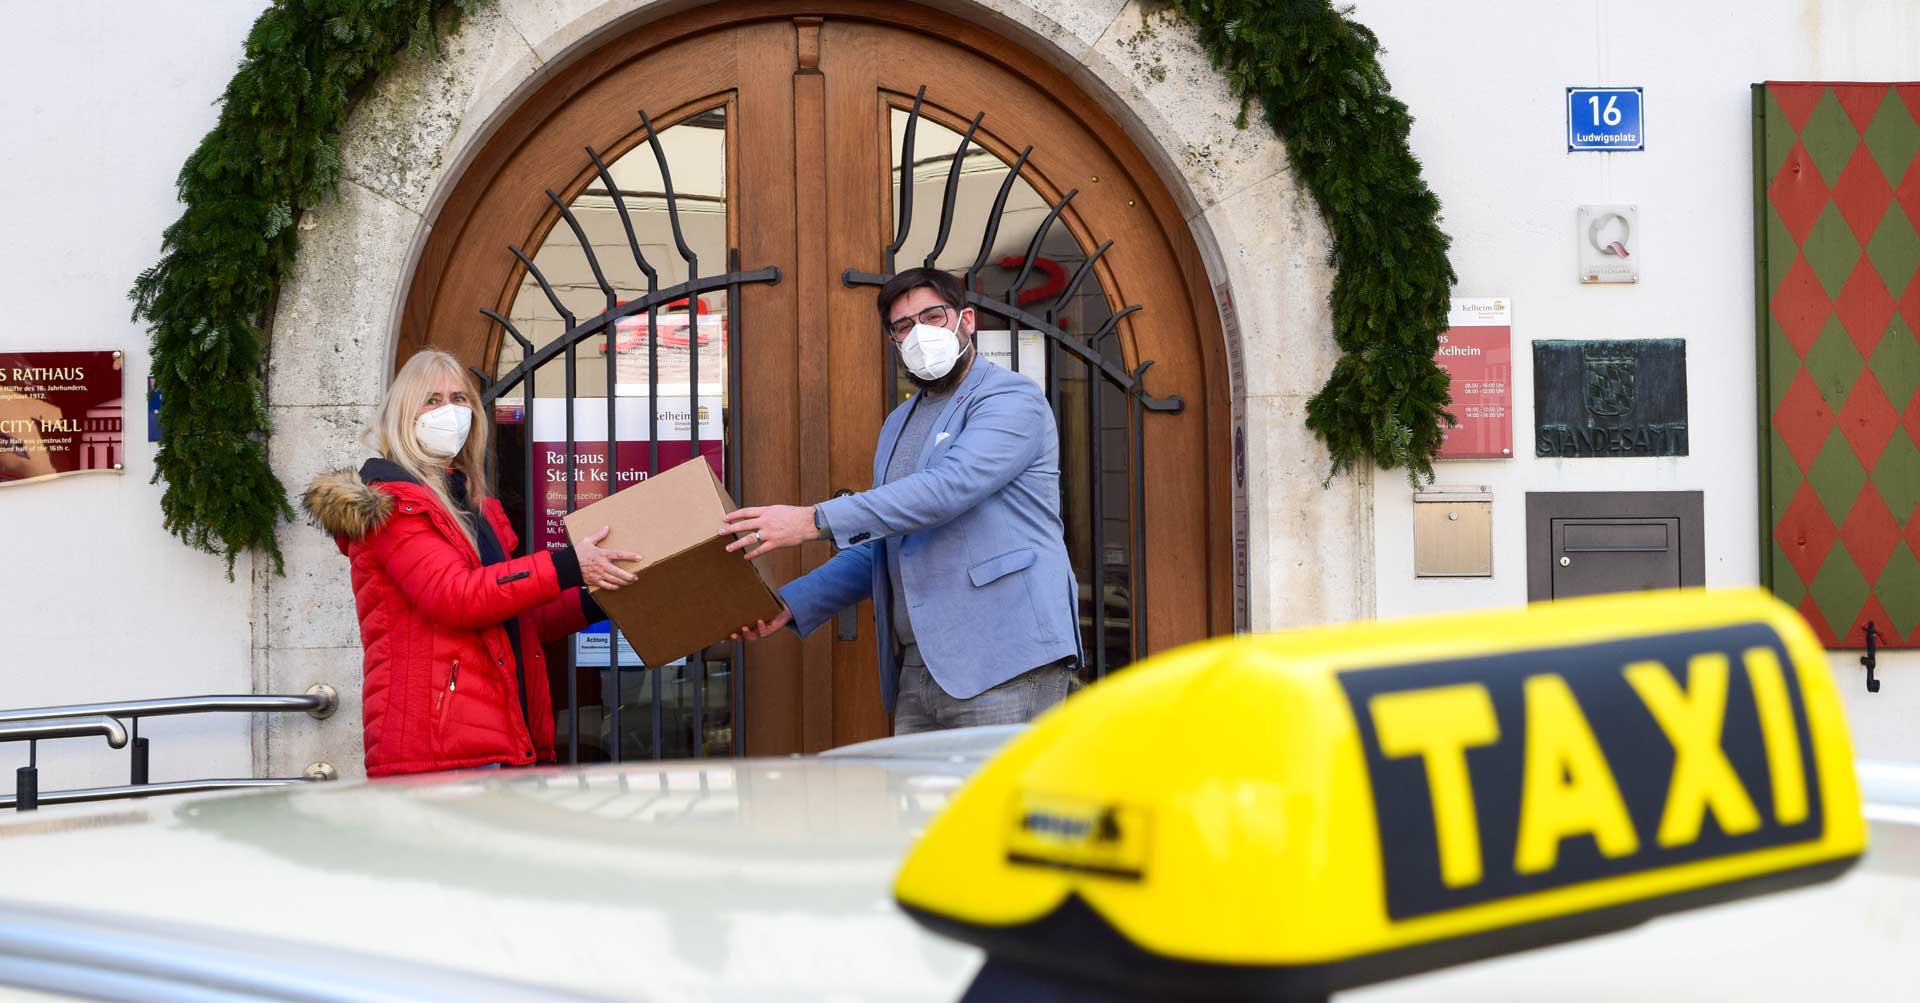 Persönlich bestellt, das Taxi liefert’s. Marion Hönig von MH-Taxi überreicht Bürgermeister Christian Schweiger vor dem Rathaus ein Paket (Foto: Lena Plapperer/Stadt Kelheim)